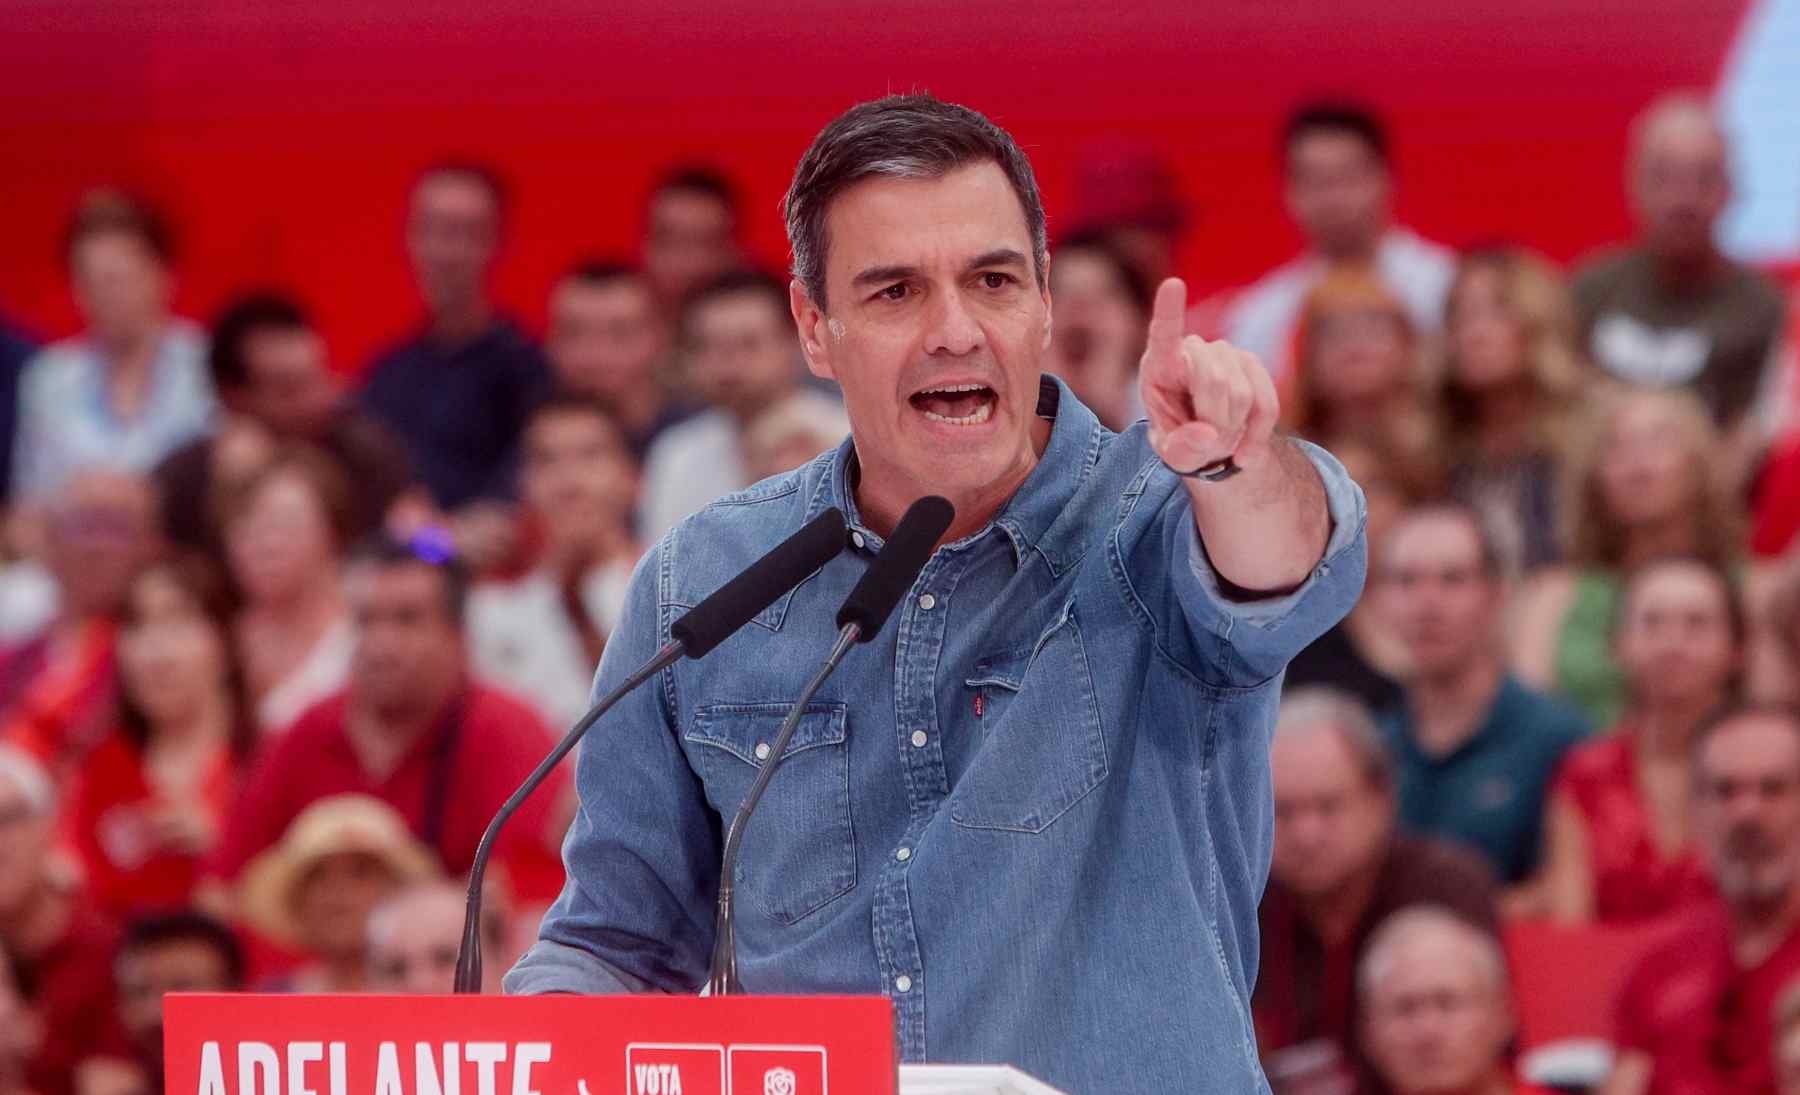 La Junta Electoral tumba el intento desesperado del PSOE de recuperar un escaño revisando los votos nulos